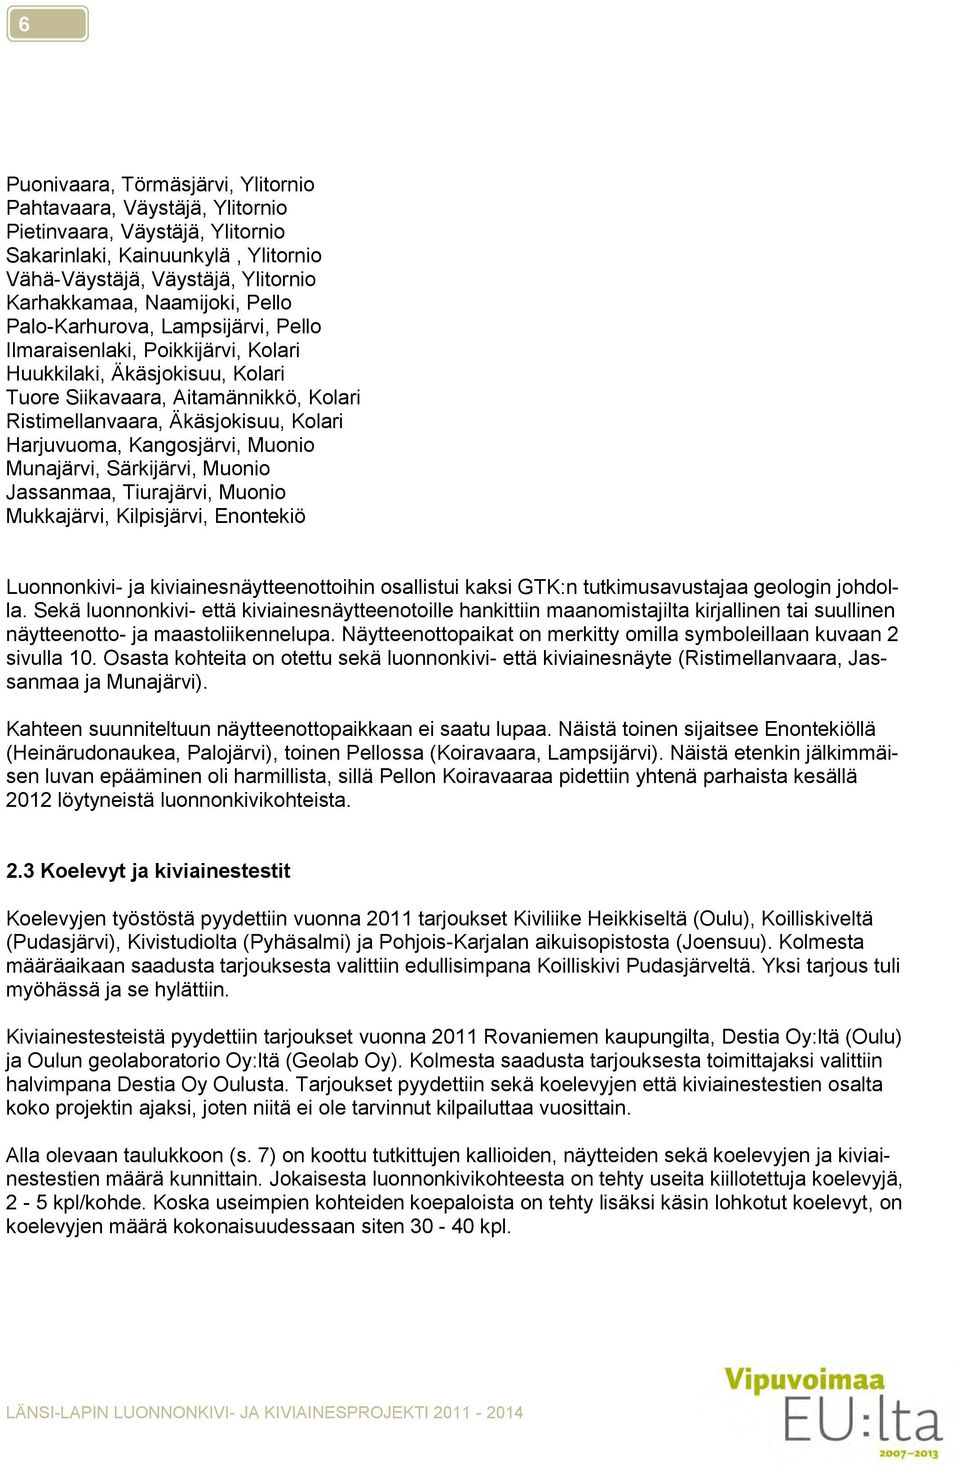 Kangosjärvi, Muonio Munajärvi, Särkijärvi, Muonio Jassanmaa, Tiurajärvi, Muonio Mukkajärvi, Kilpisjärvi, Enontekiö Luonnonkivi- ja kiviainesnäytteenottoihin osallistui kaksi GTK:n tutkimusavustajaa